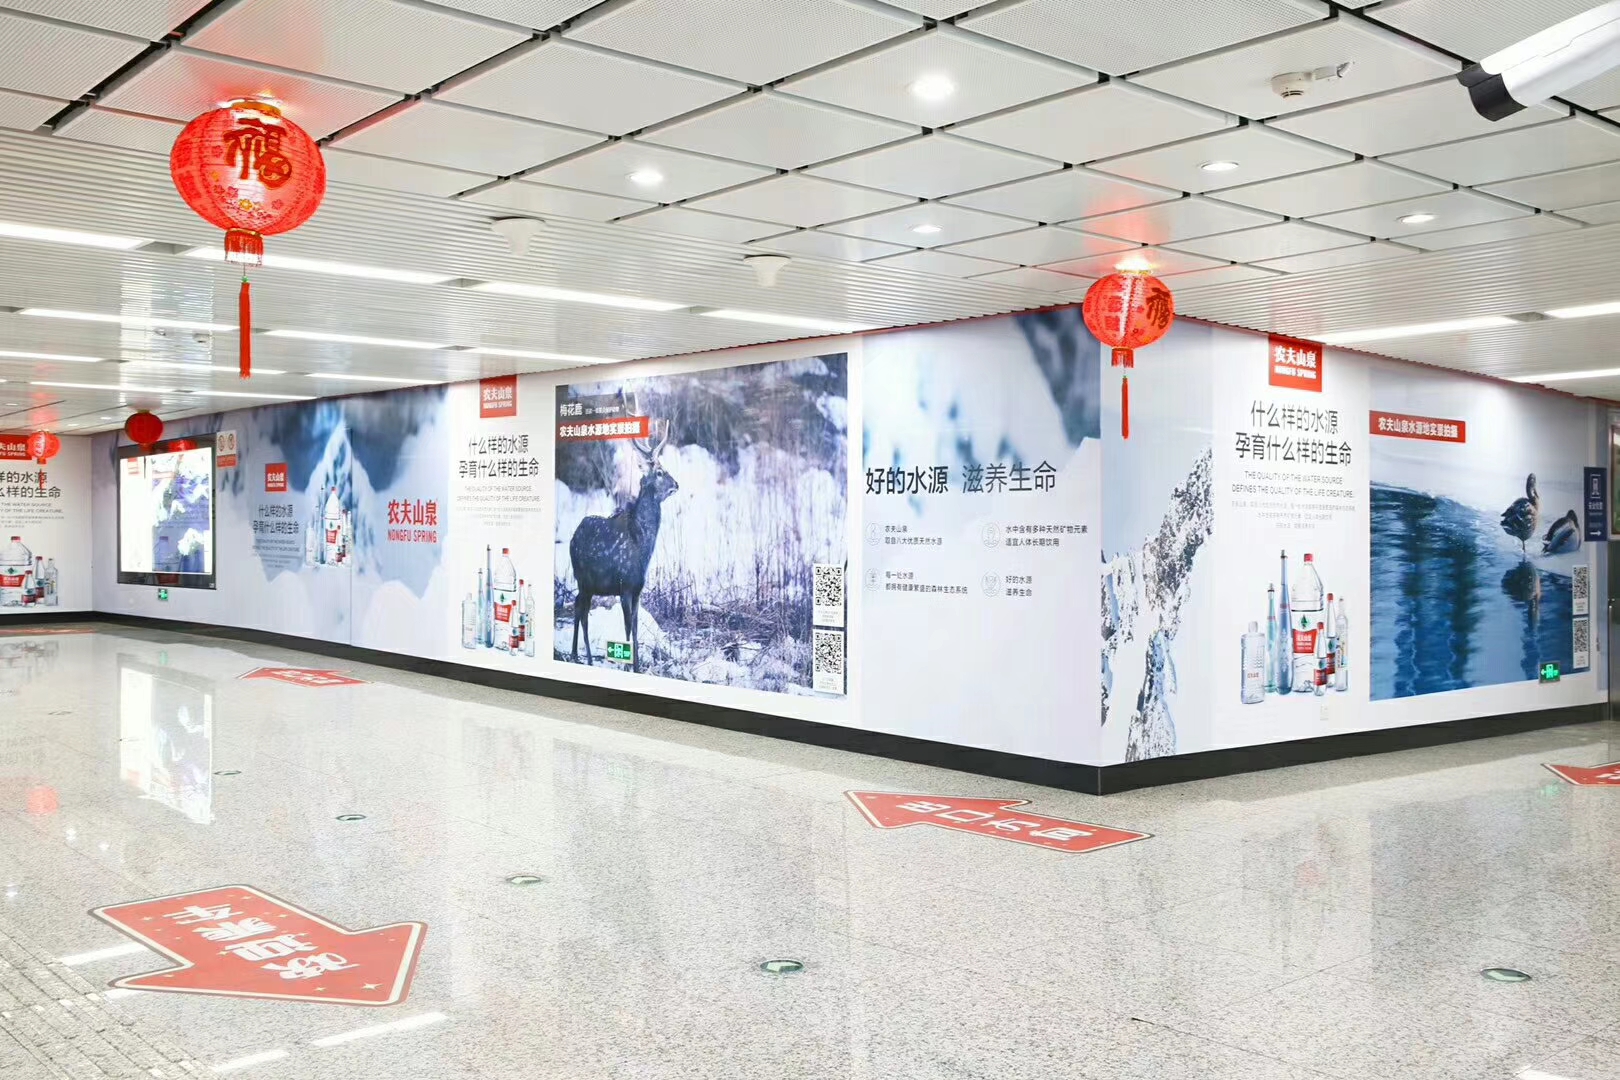 深圳地铁广告品牌客户营销的新概念